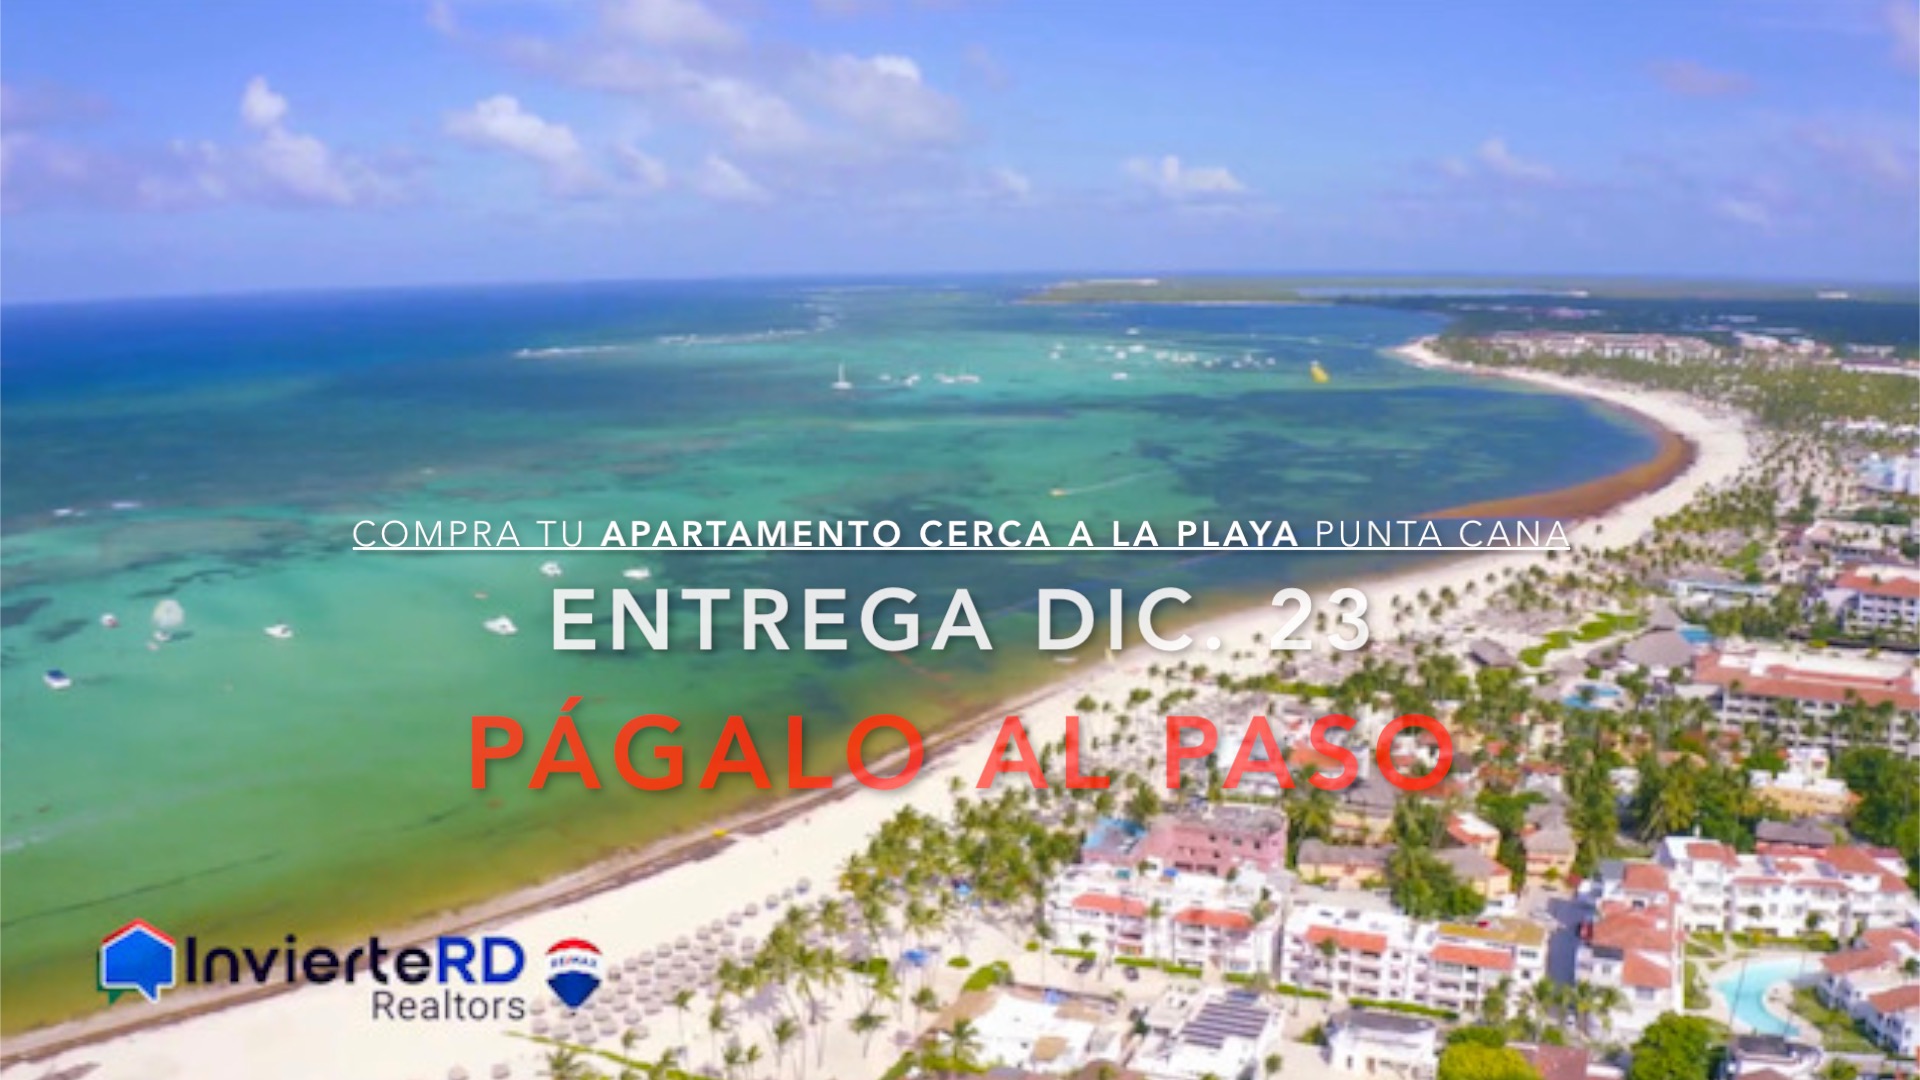 Compra tu Apartamento cerca de la Playa en Punta Cana y Pagalo al paso. InvierteRD Realtors en remax Inmobiliaria en Punta Cana - Regis Jimenez Agente en Punta Cana y Santo Domingo. InvierteRD Realtors en Remax Inmobiliaria